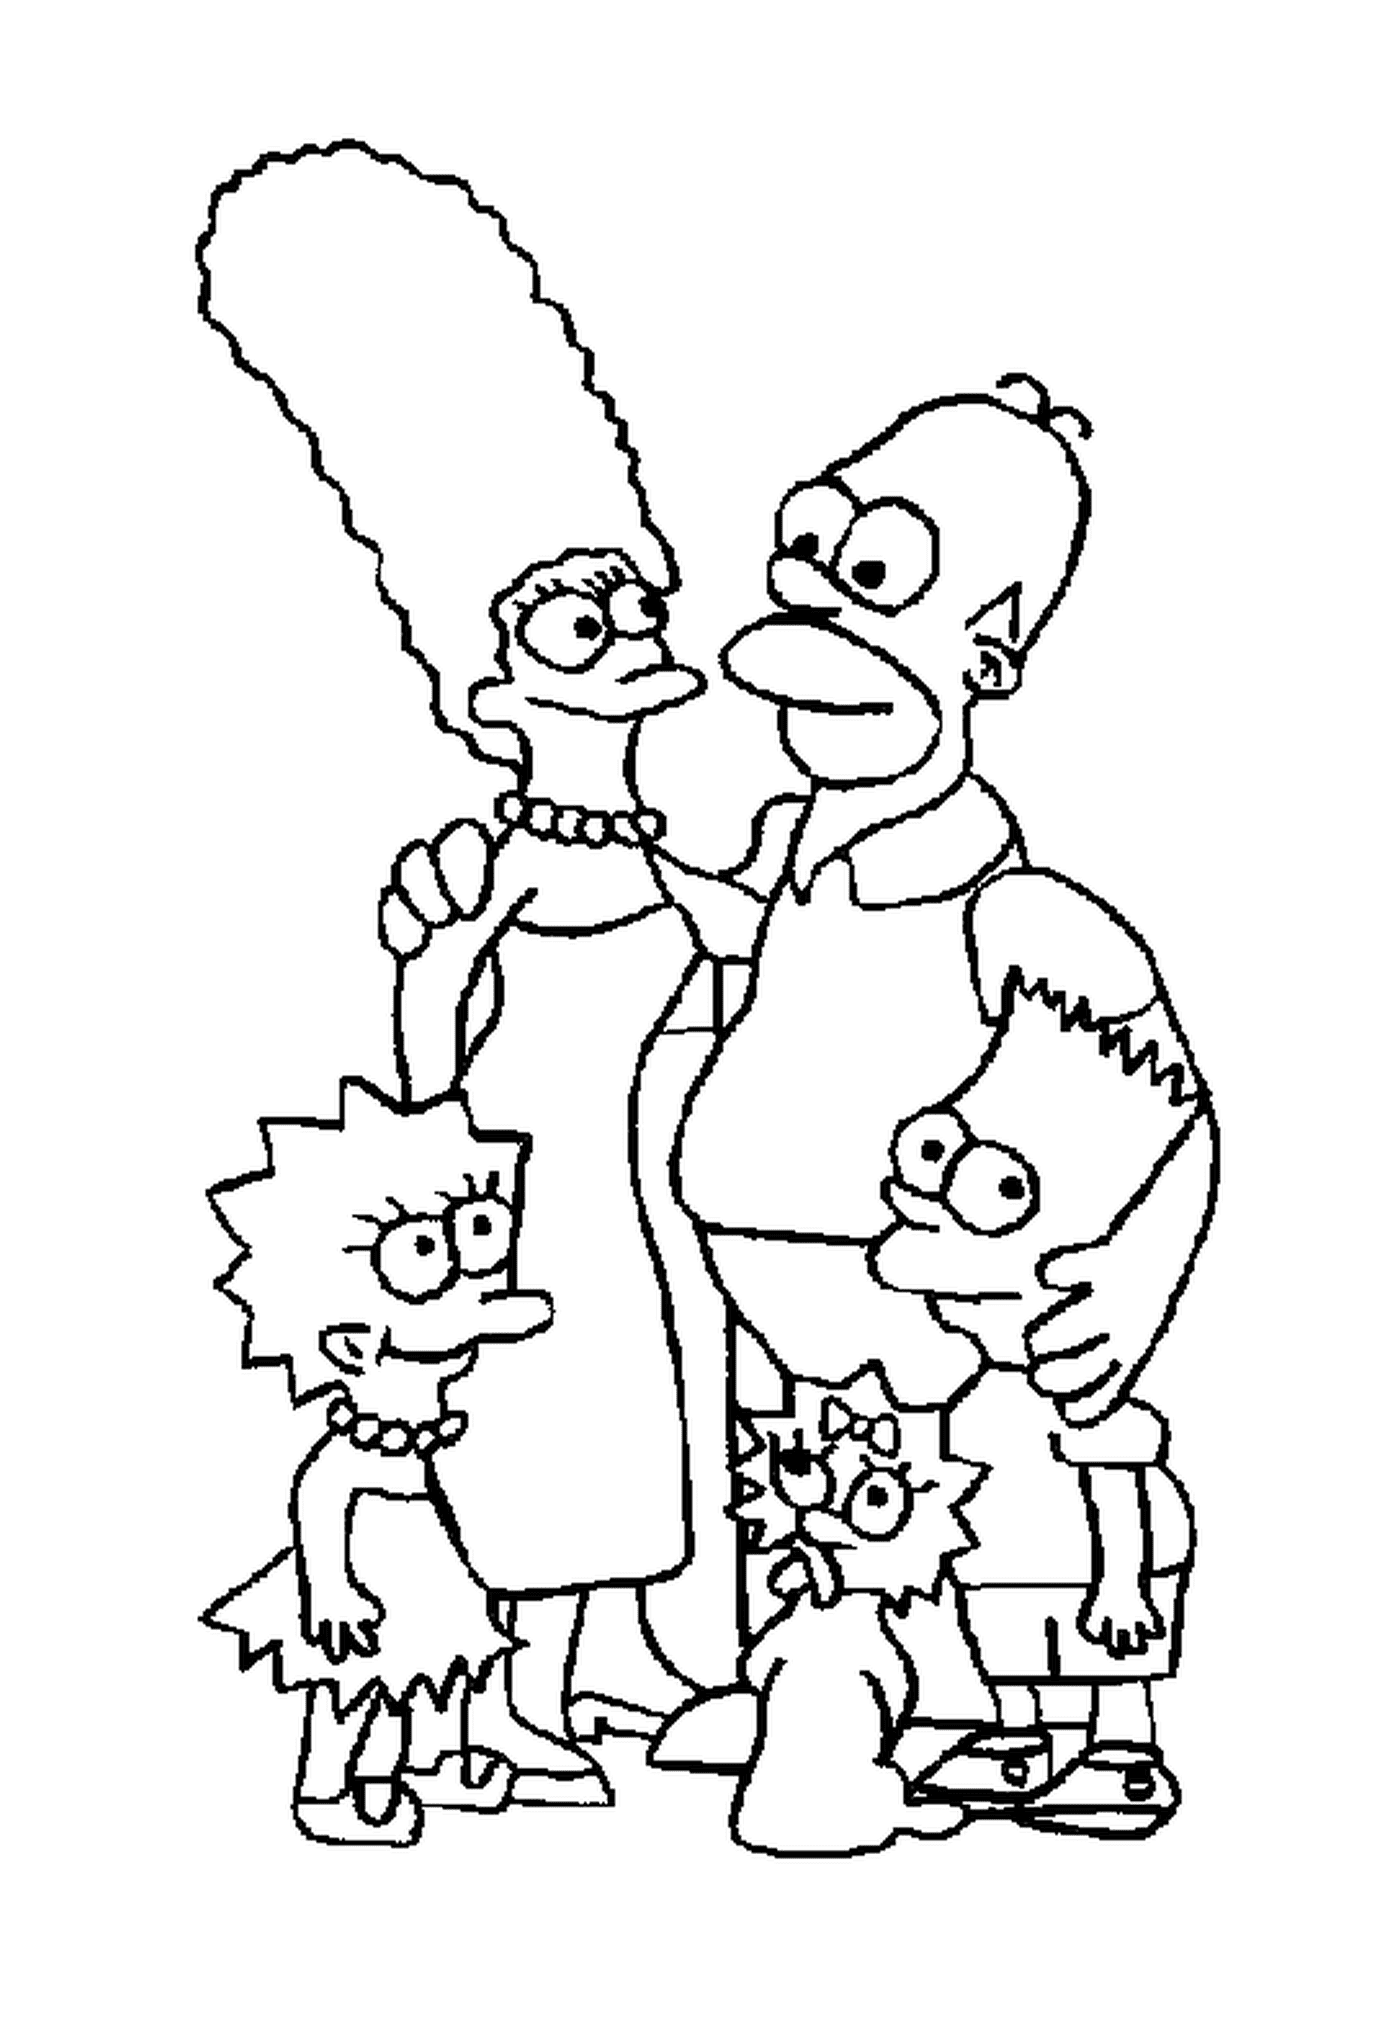  La famiglia Simpson è riunita 